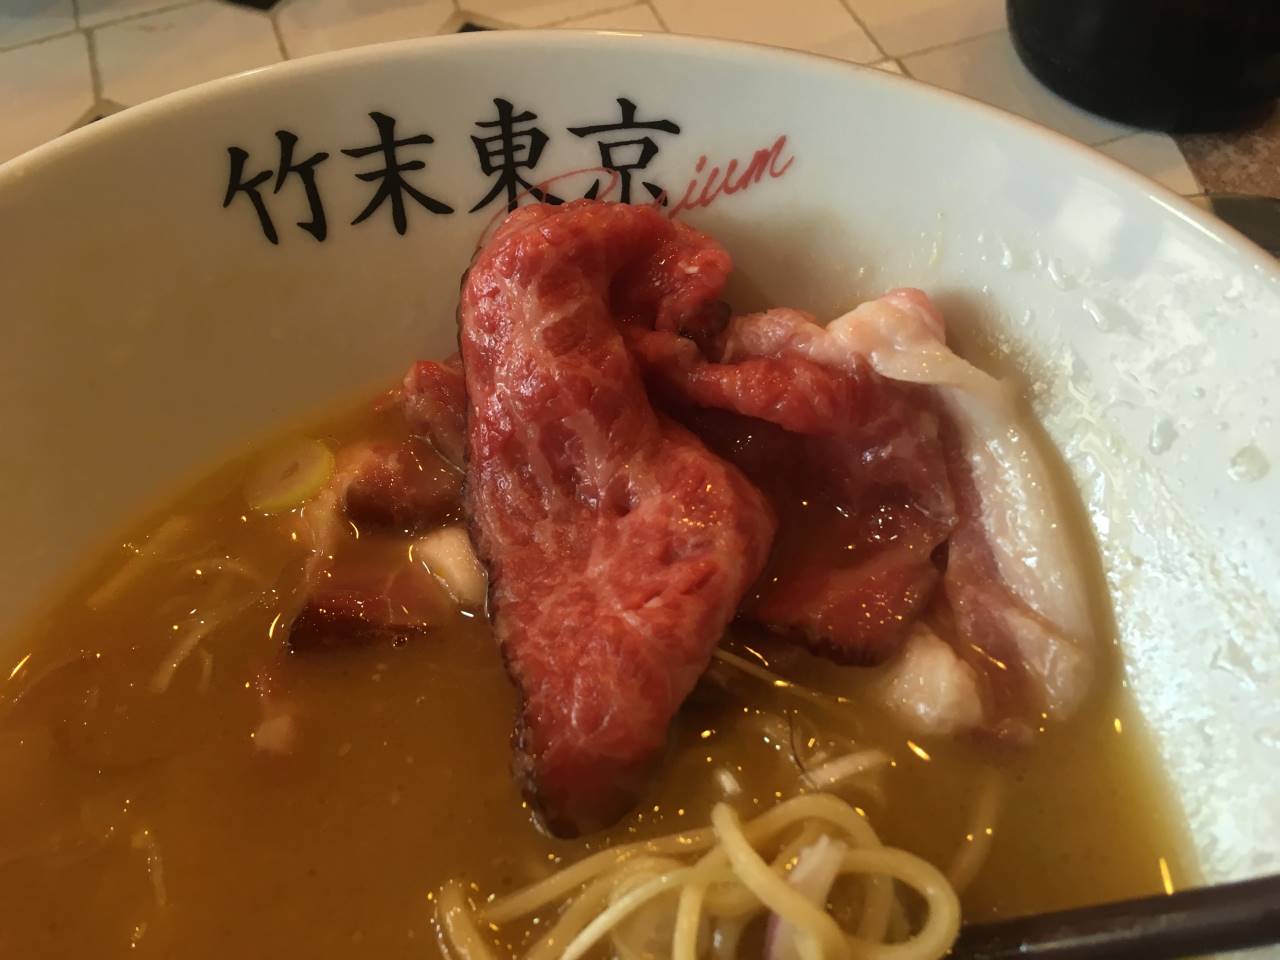 竹末東京プレミアム5周年記念のラーメン竹末東京プレミアム5周年記念のラーメンの牛肉